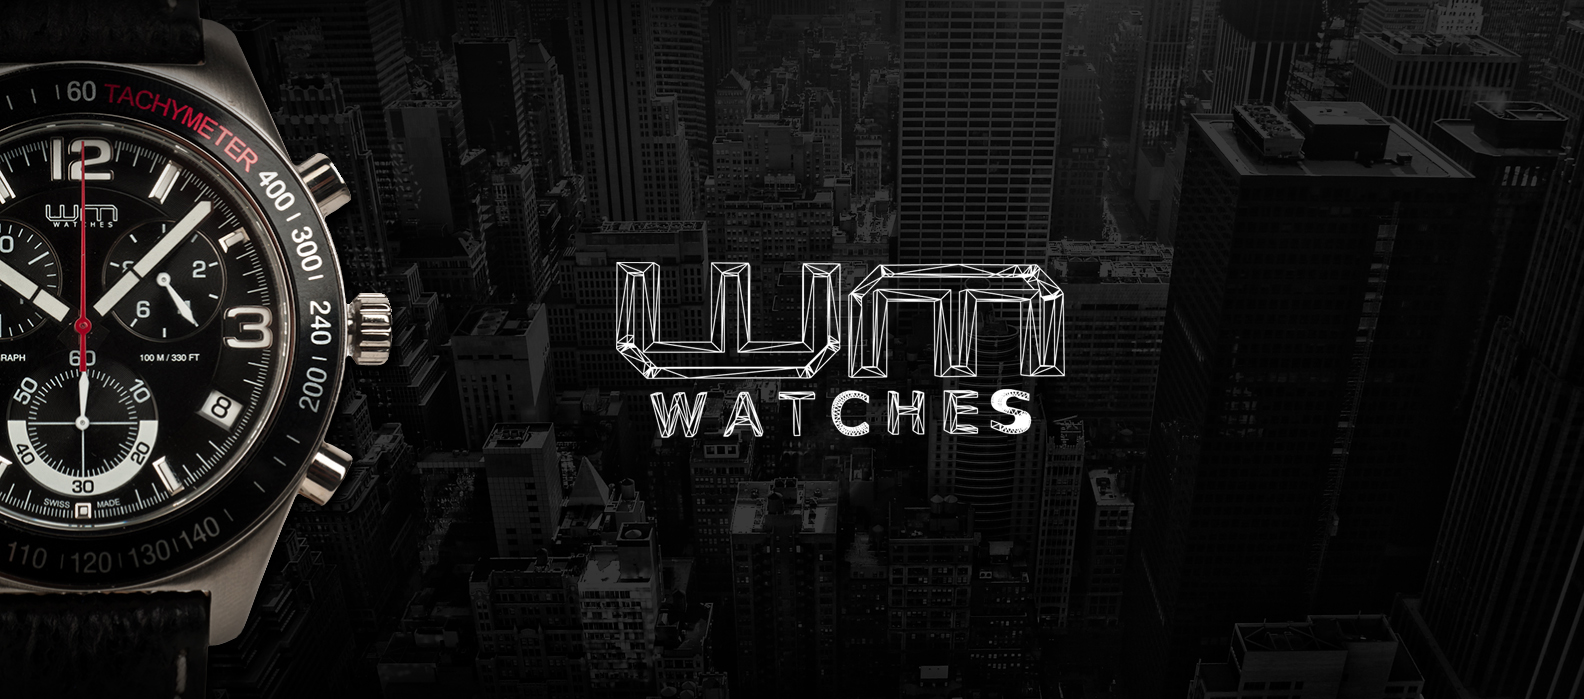 WM-watches-branding-1